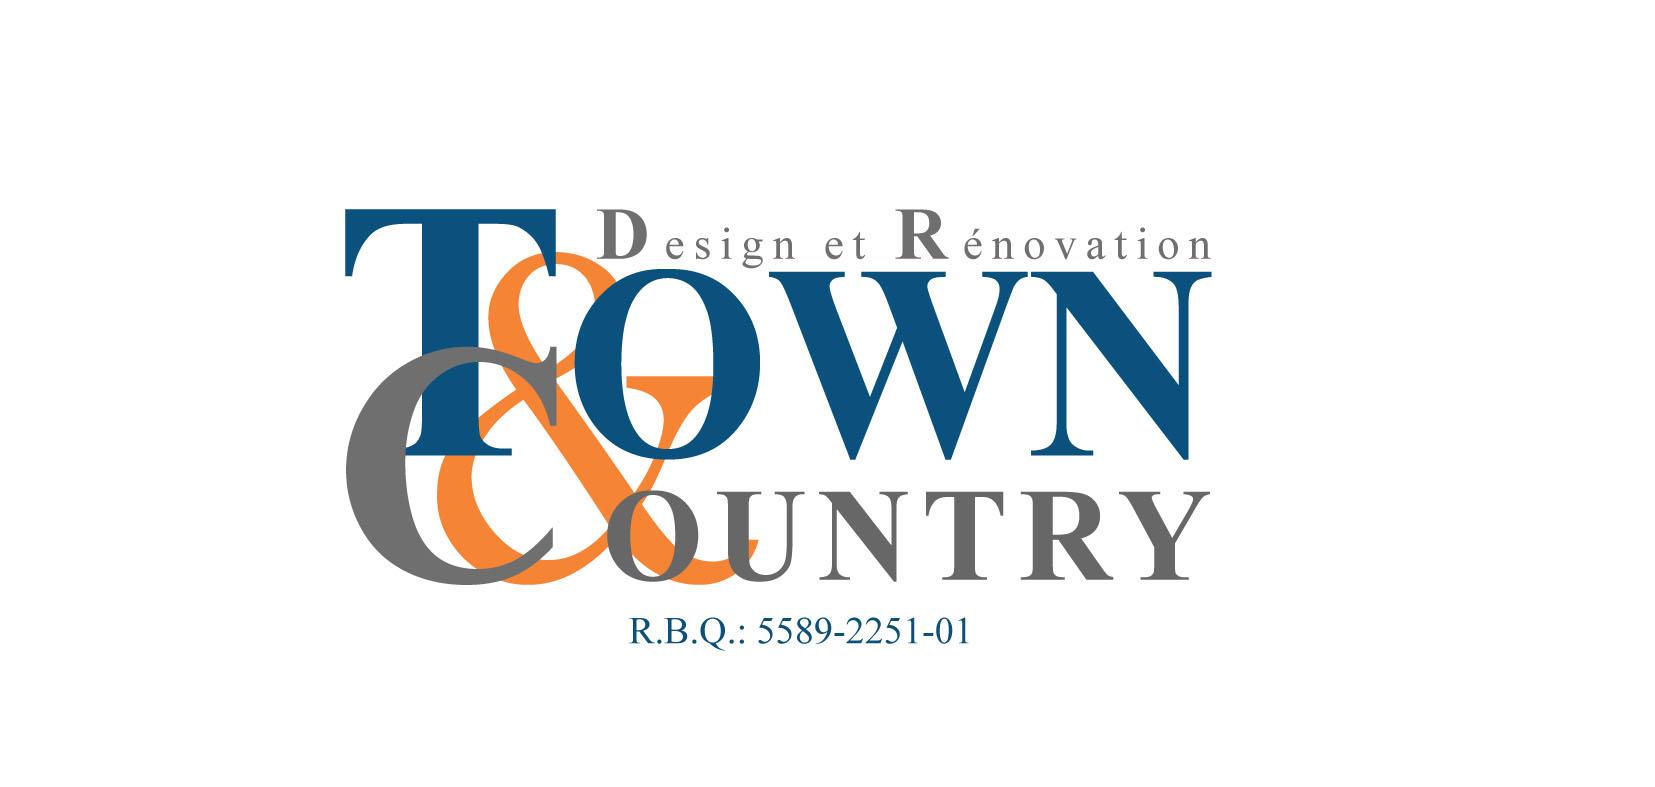 Design et rénovation Town & Country Inc.